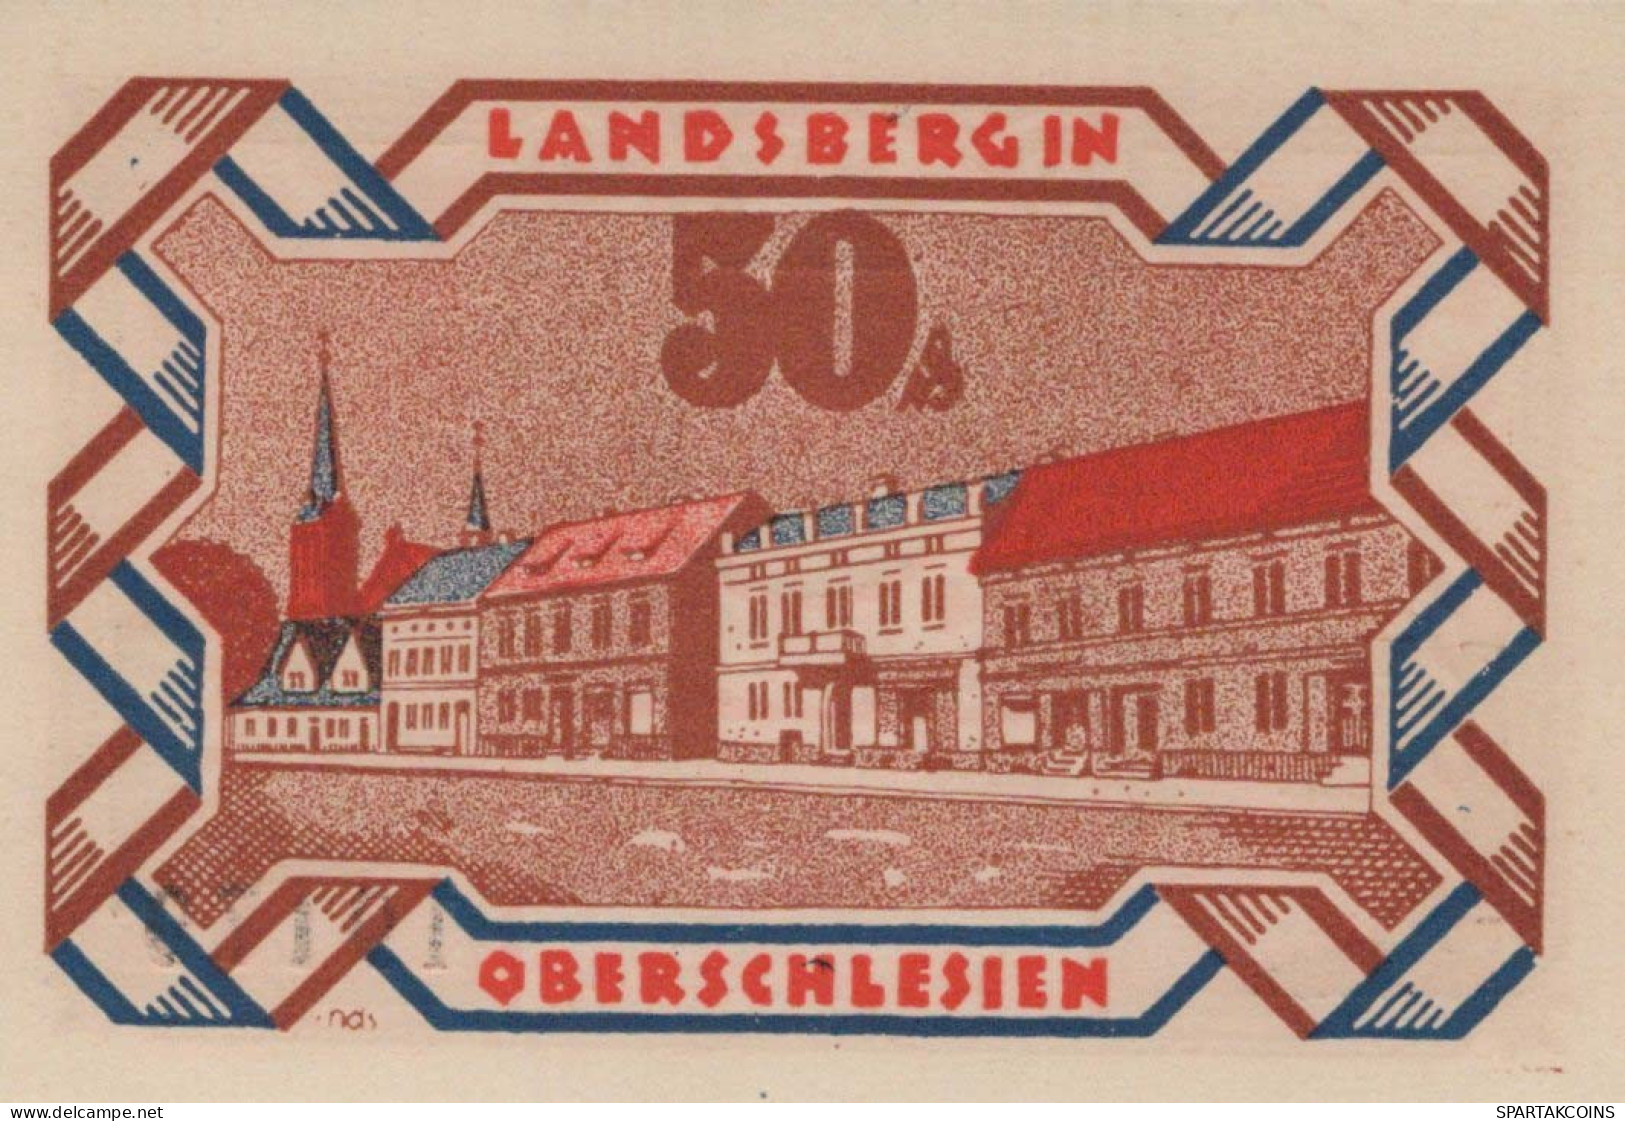 50 PFENNIG 1922 Stadt LANDSBERG OBERSCHLESIEN UNC DEUTSCHLAND #PB927 - [11] Local Banknote Issues